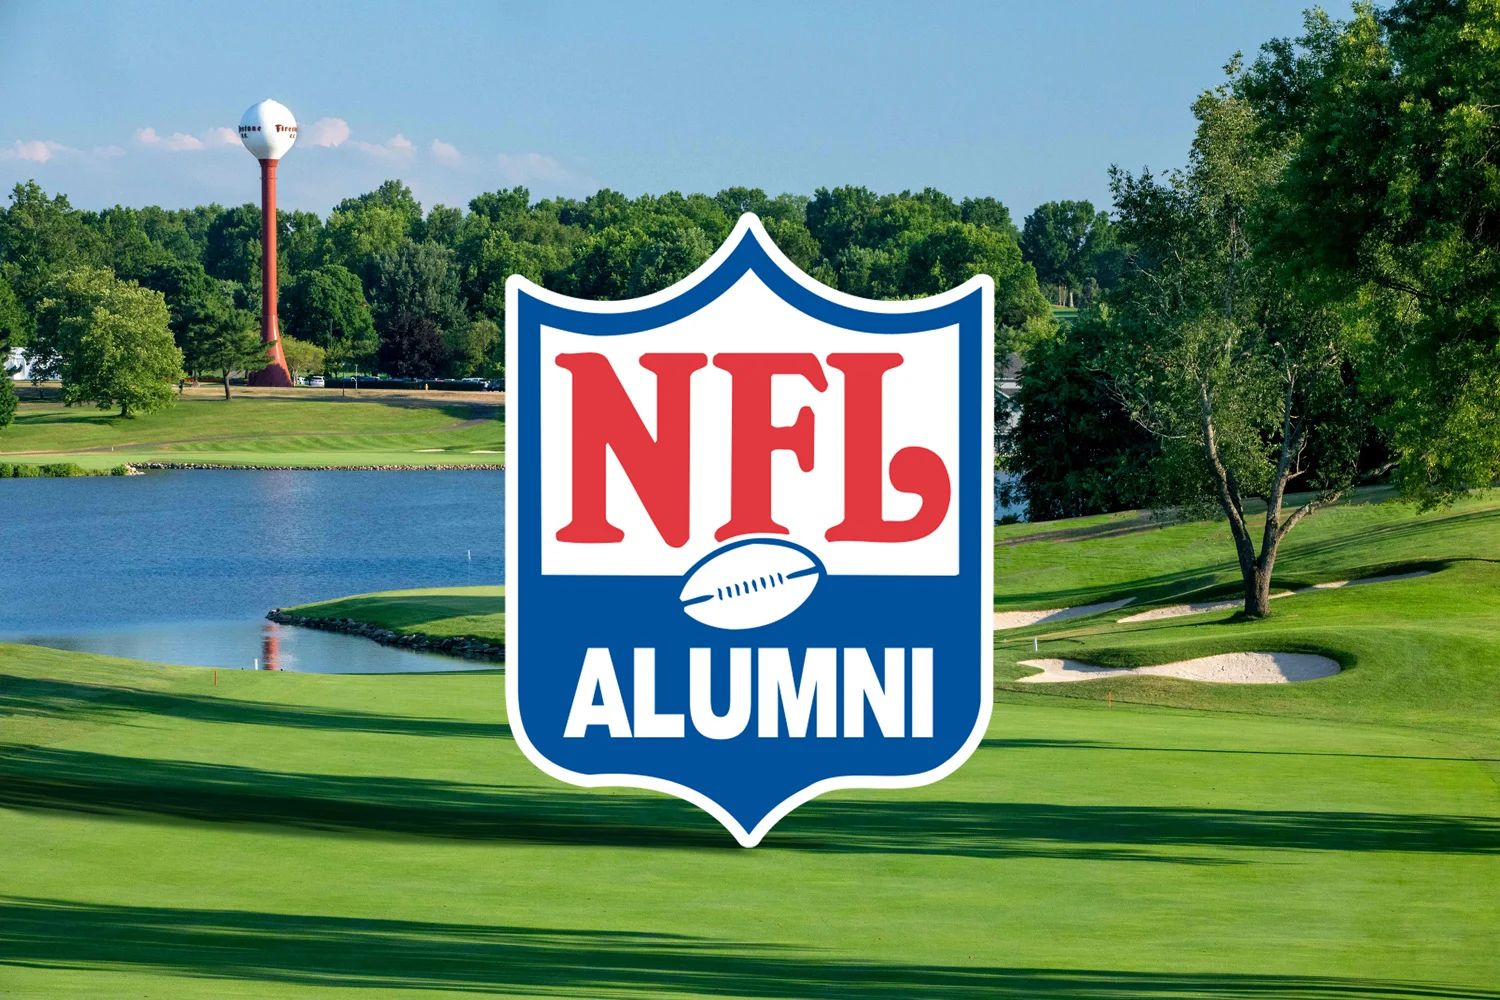 Alumni NFL in Aventusova pobuda NFT za upokojence